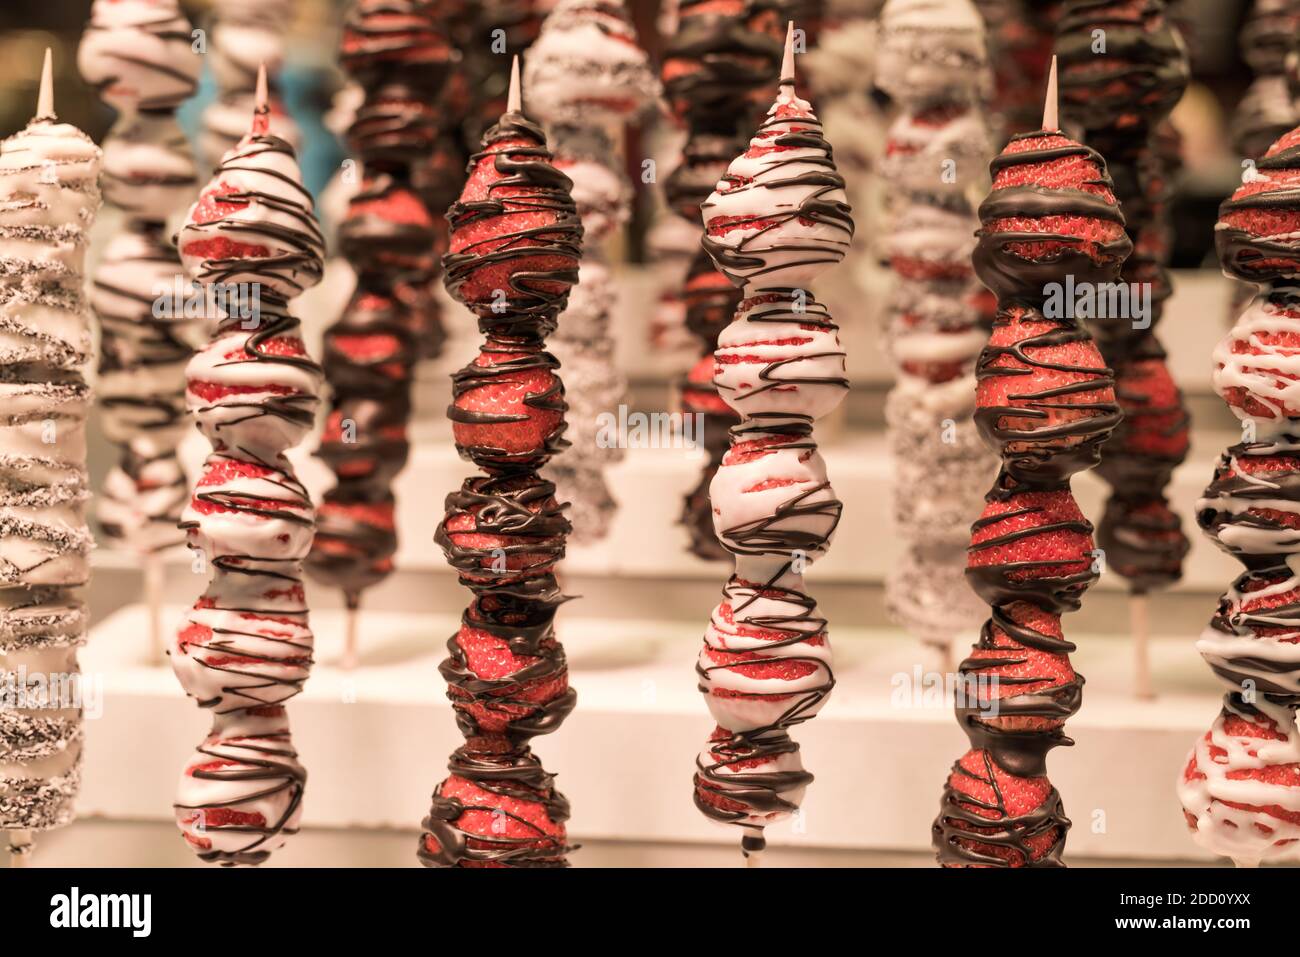 Fraises enrobées de chocolat, en-cas sucrés sur le marché de la rue Banque D'Images